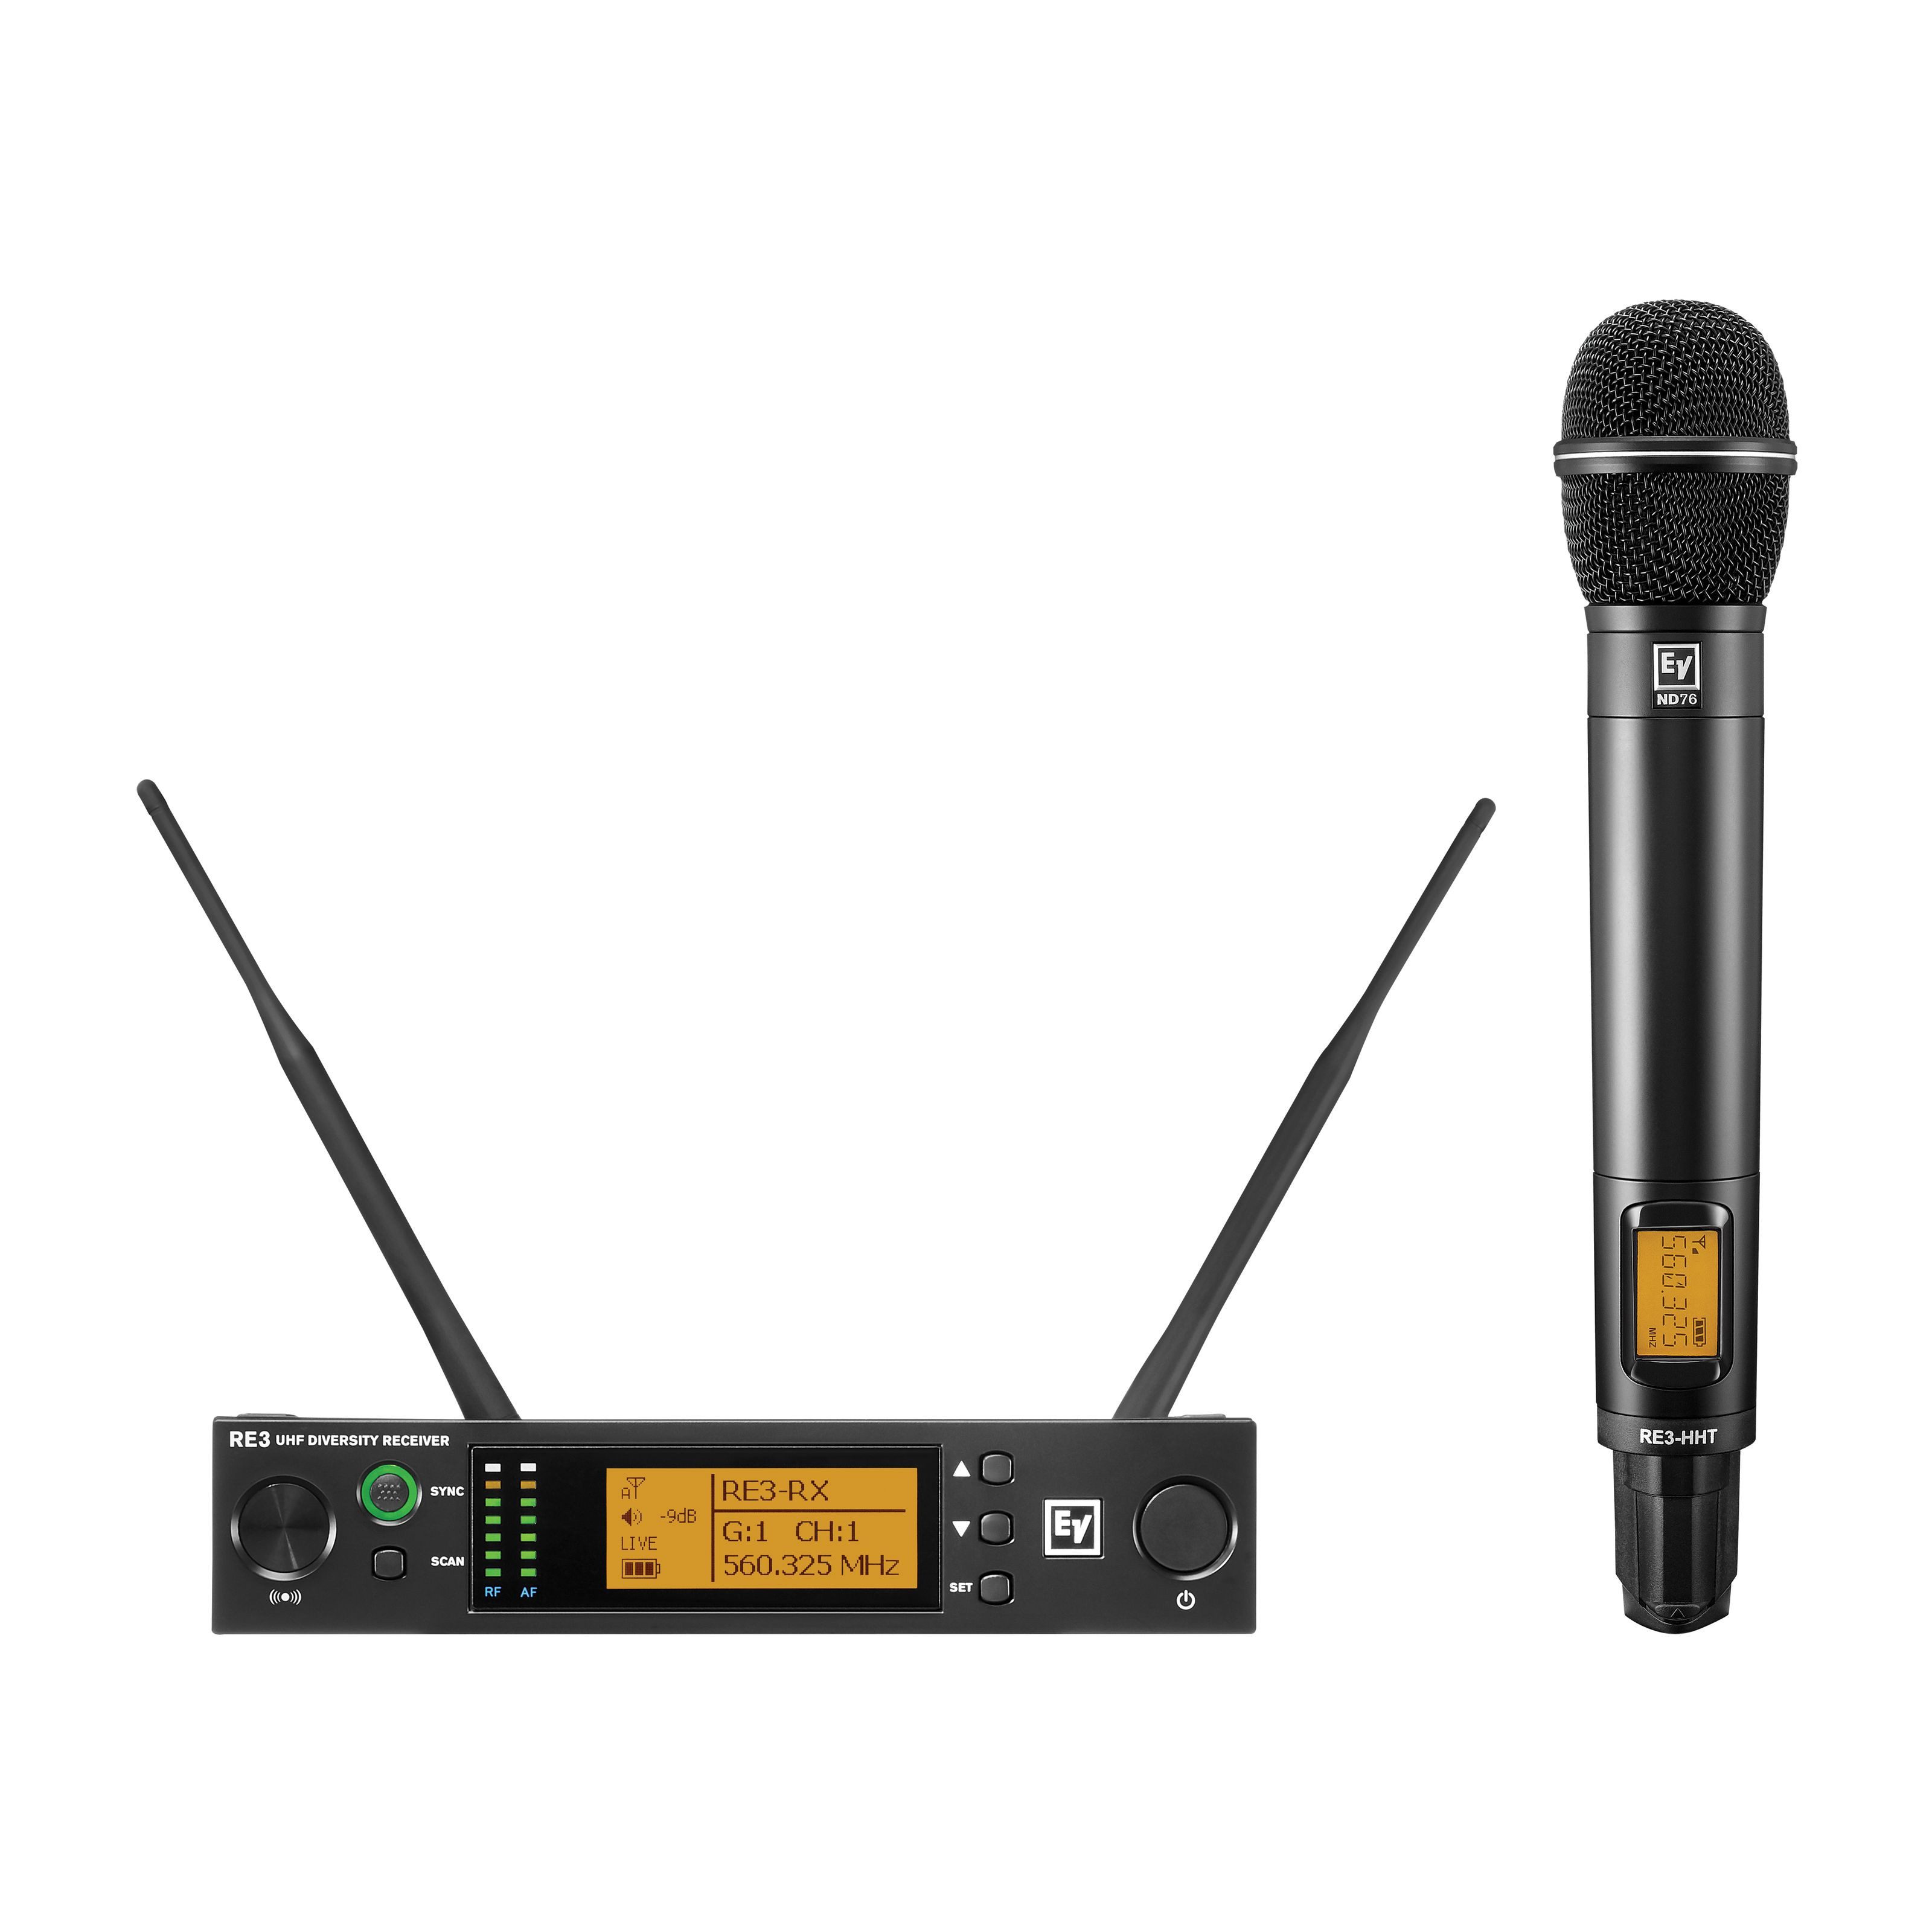 Electro Voice Mikrofon, RE3-ND76-8M 823-865MHz - Drahtlose Sendeanlage mit Handsender